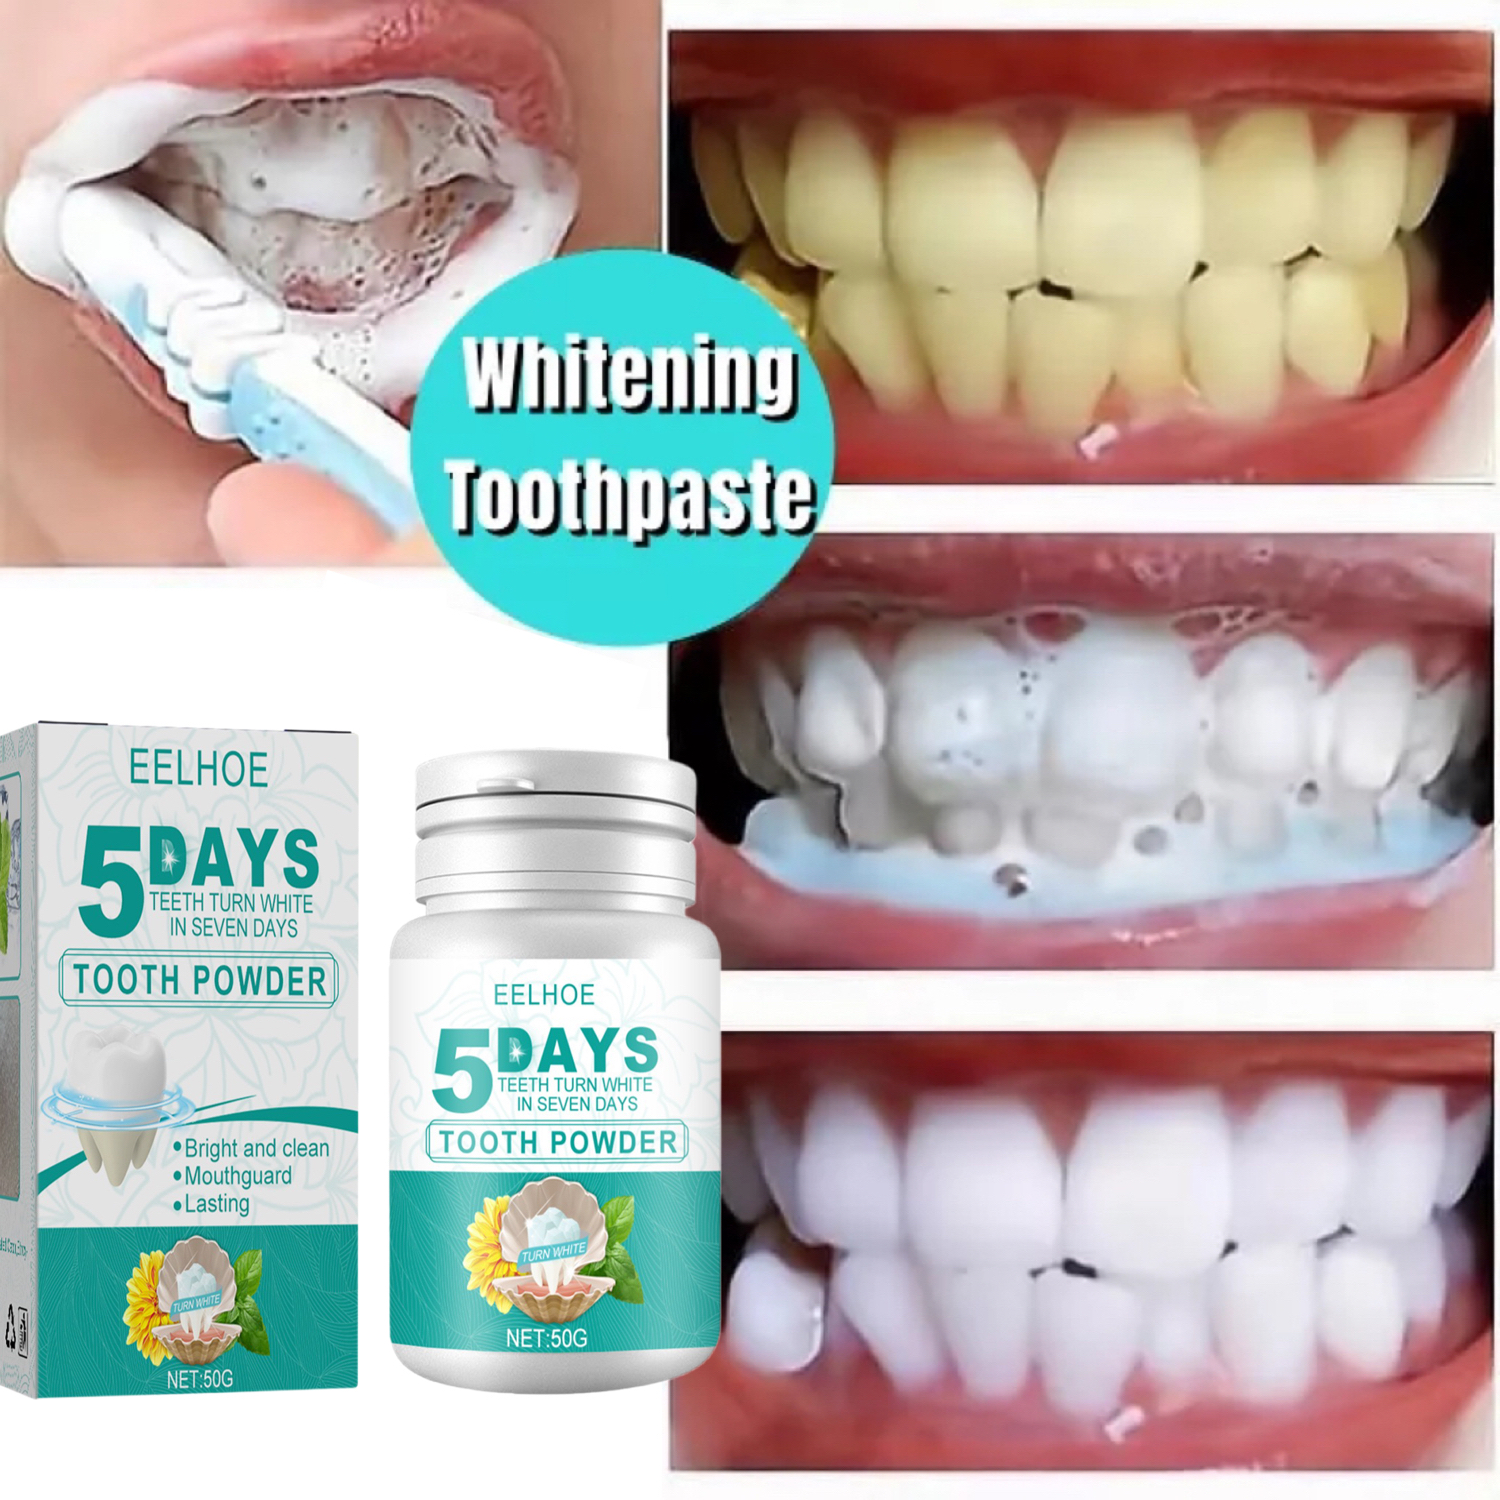 HCMBột tẩy trắng răng tẩy sạch các vết ố vàng, thơm miệng - Teeth